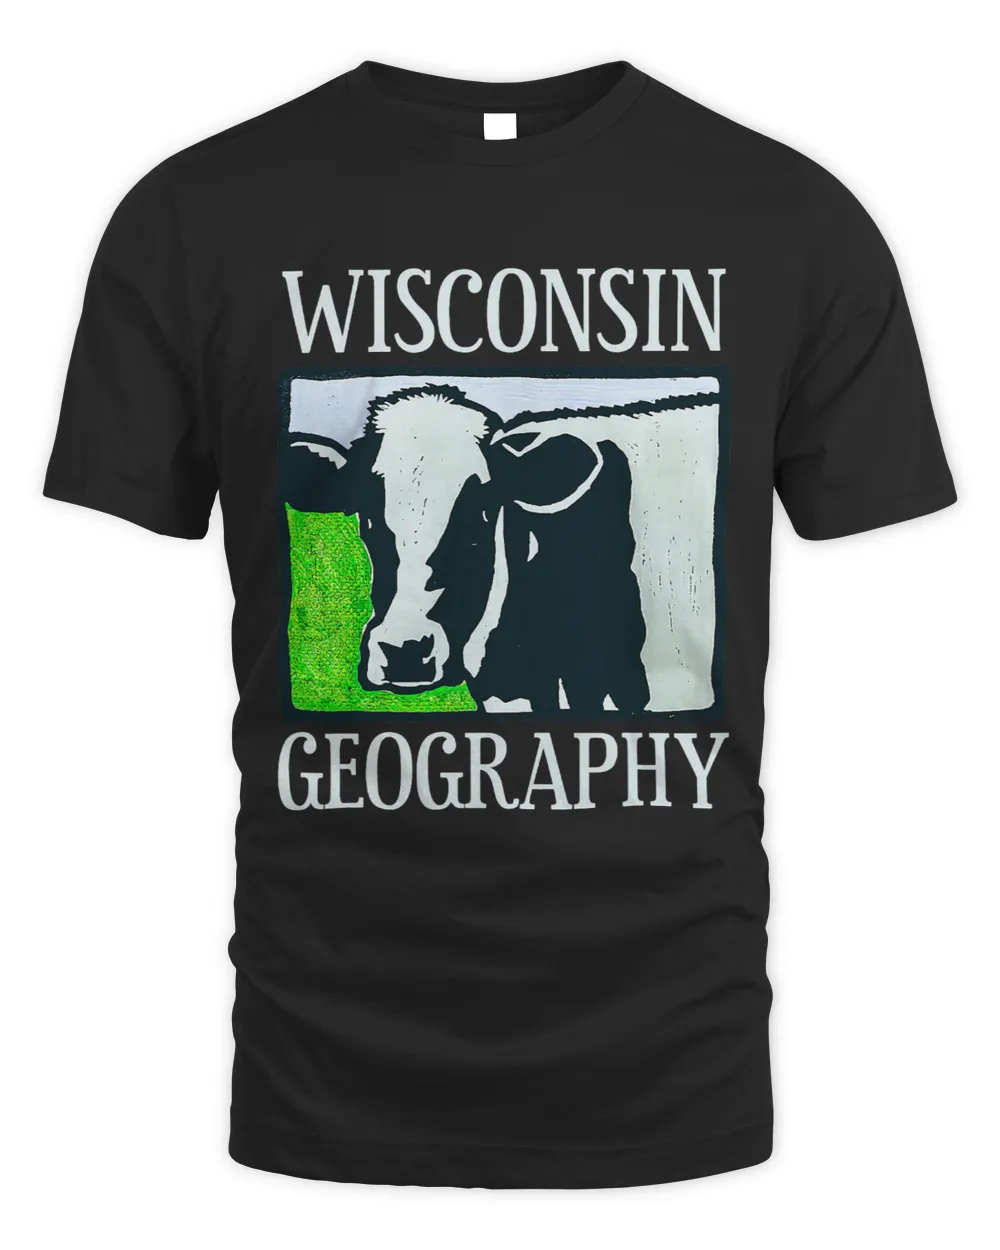 Wisconsin Geography Cow Farm Animal Farmer